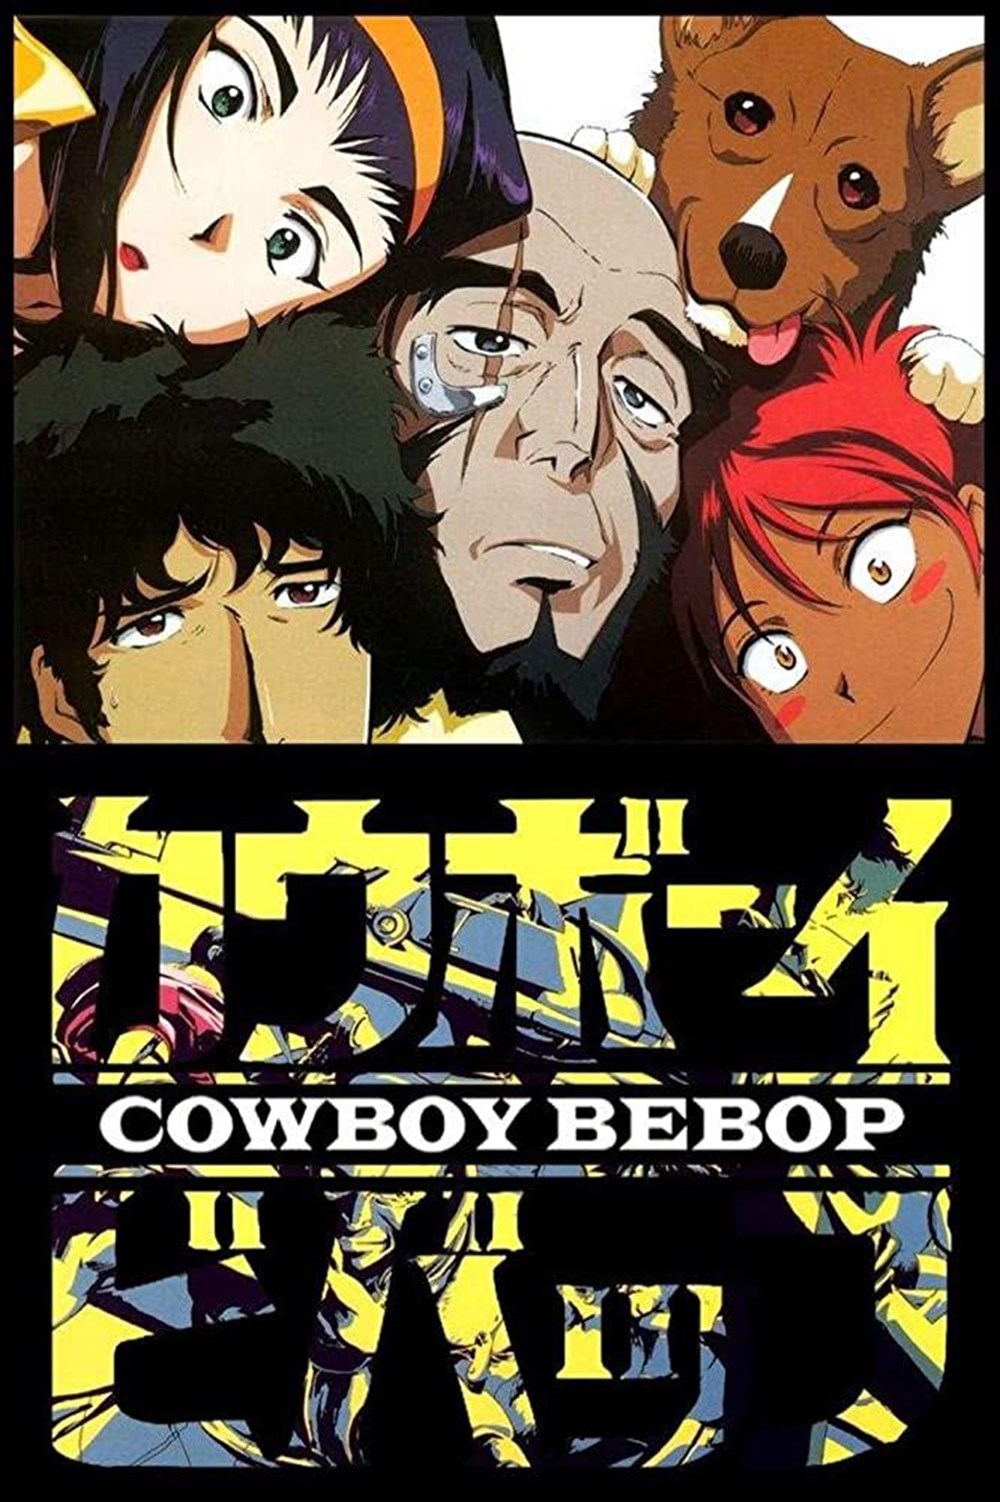 En iyi animeler (IMDb Puan sırasına göre) - 23